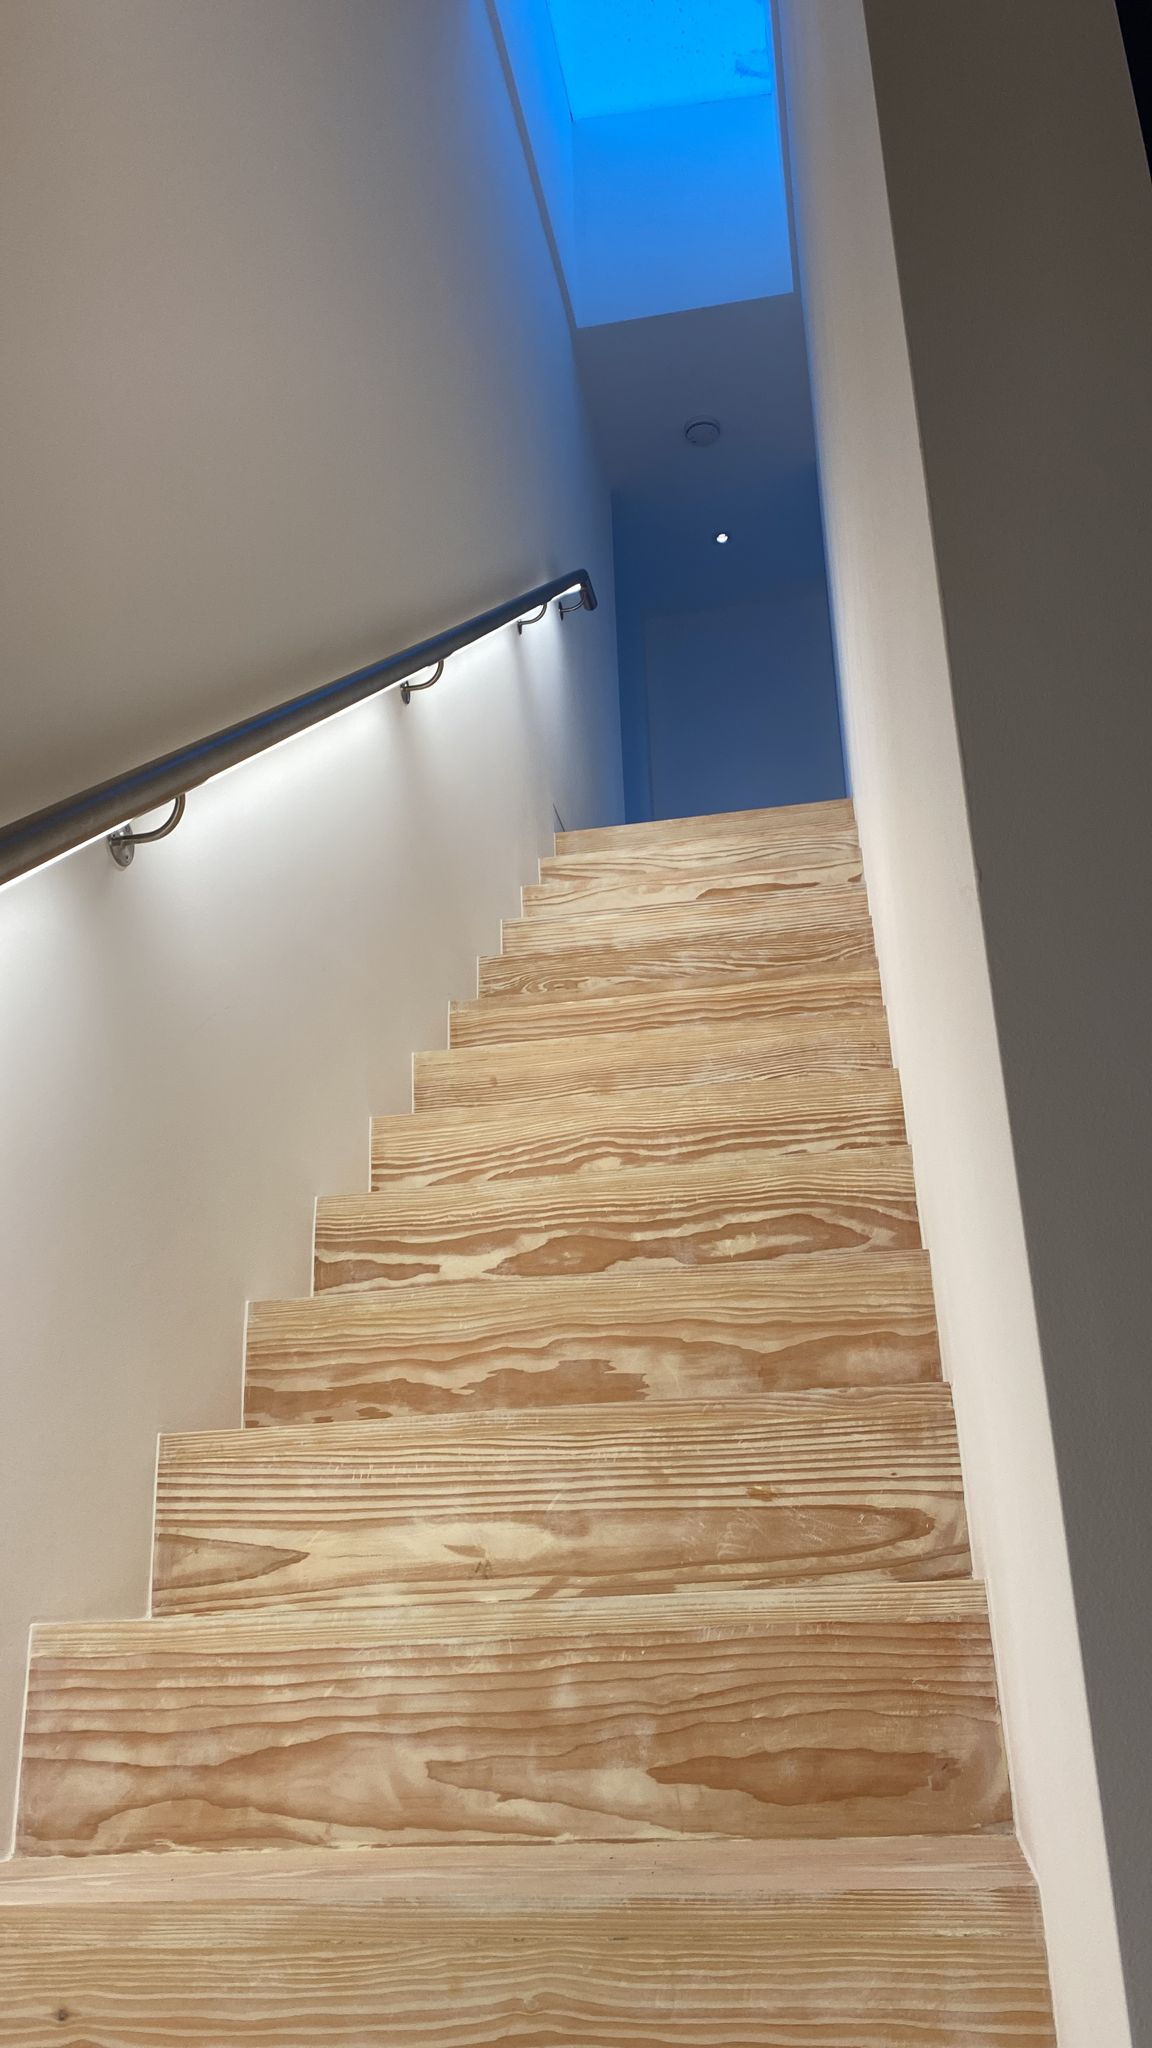 Ditton Grange - LED handrail 2